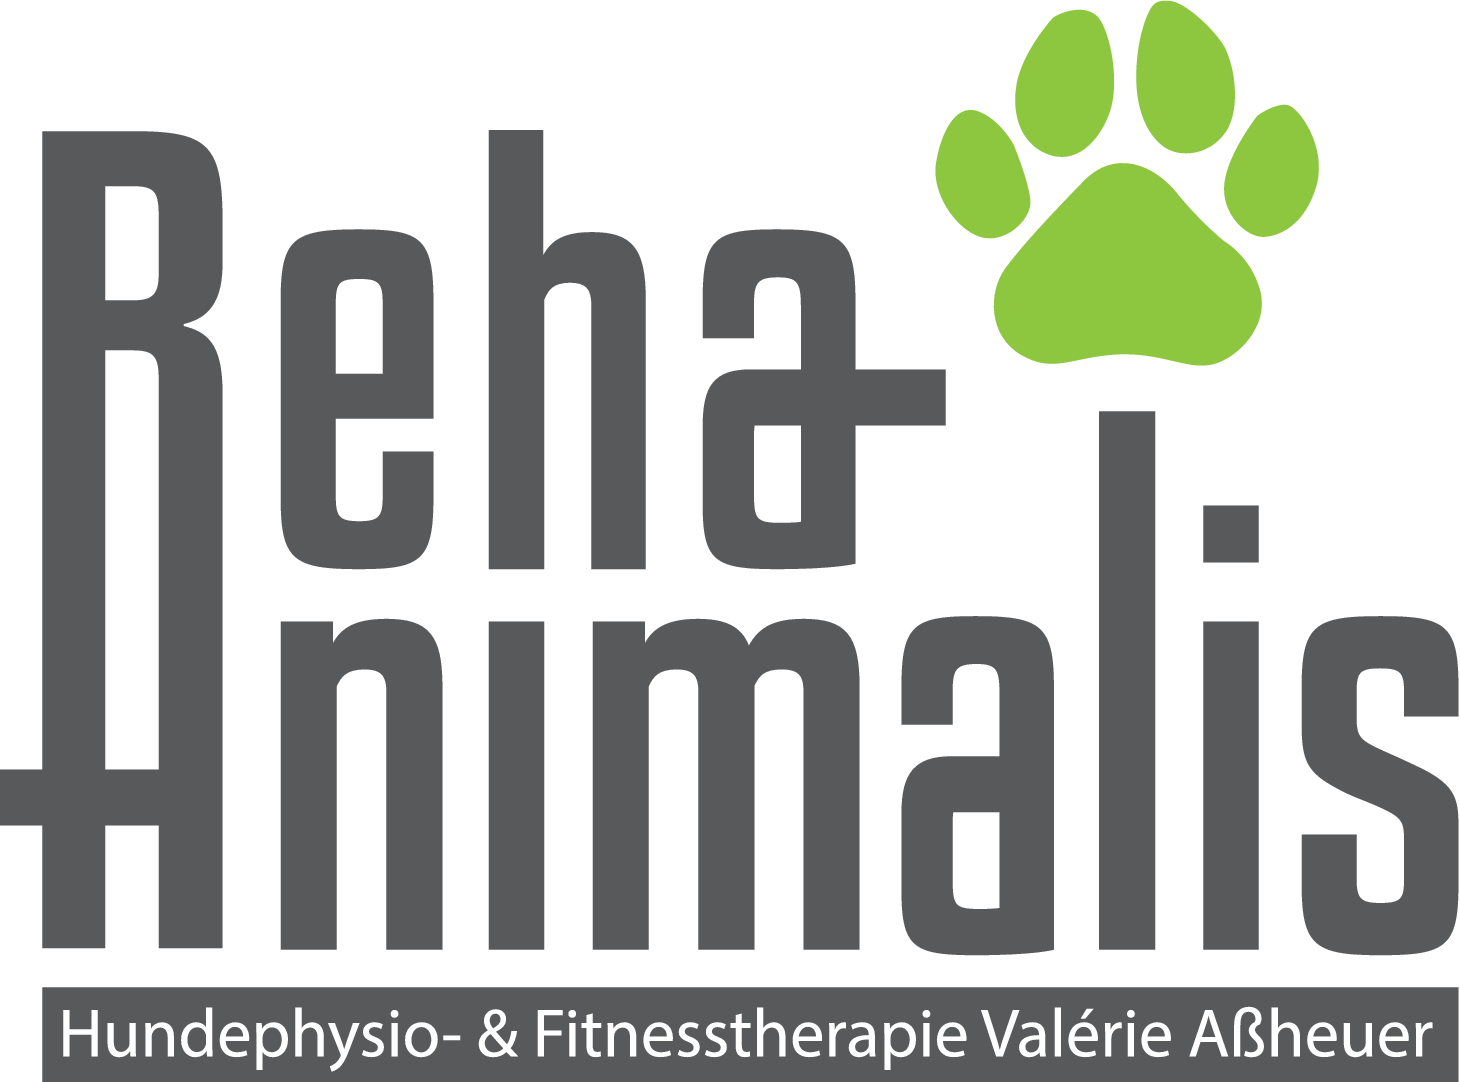 RehaAnimalis - Hundephysio- & Fitnesstherapie Valérie Aßheuer